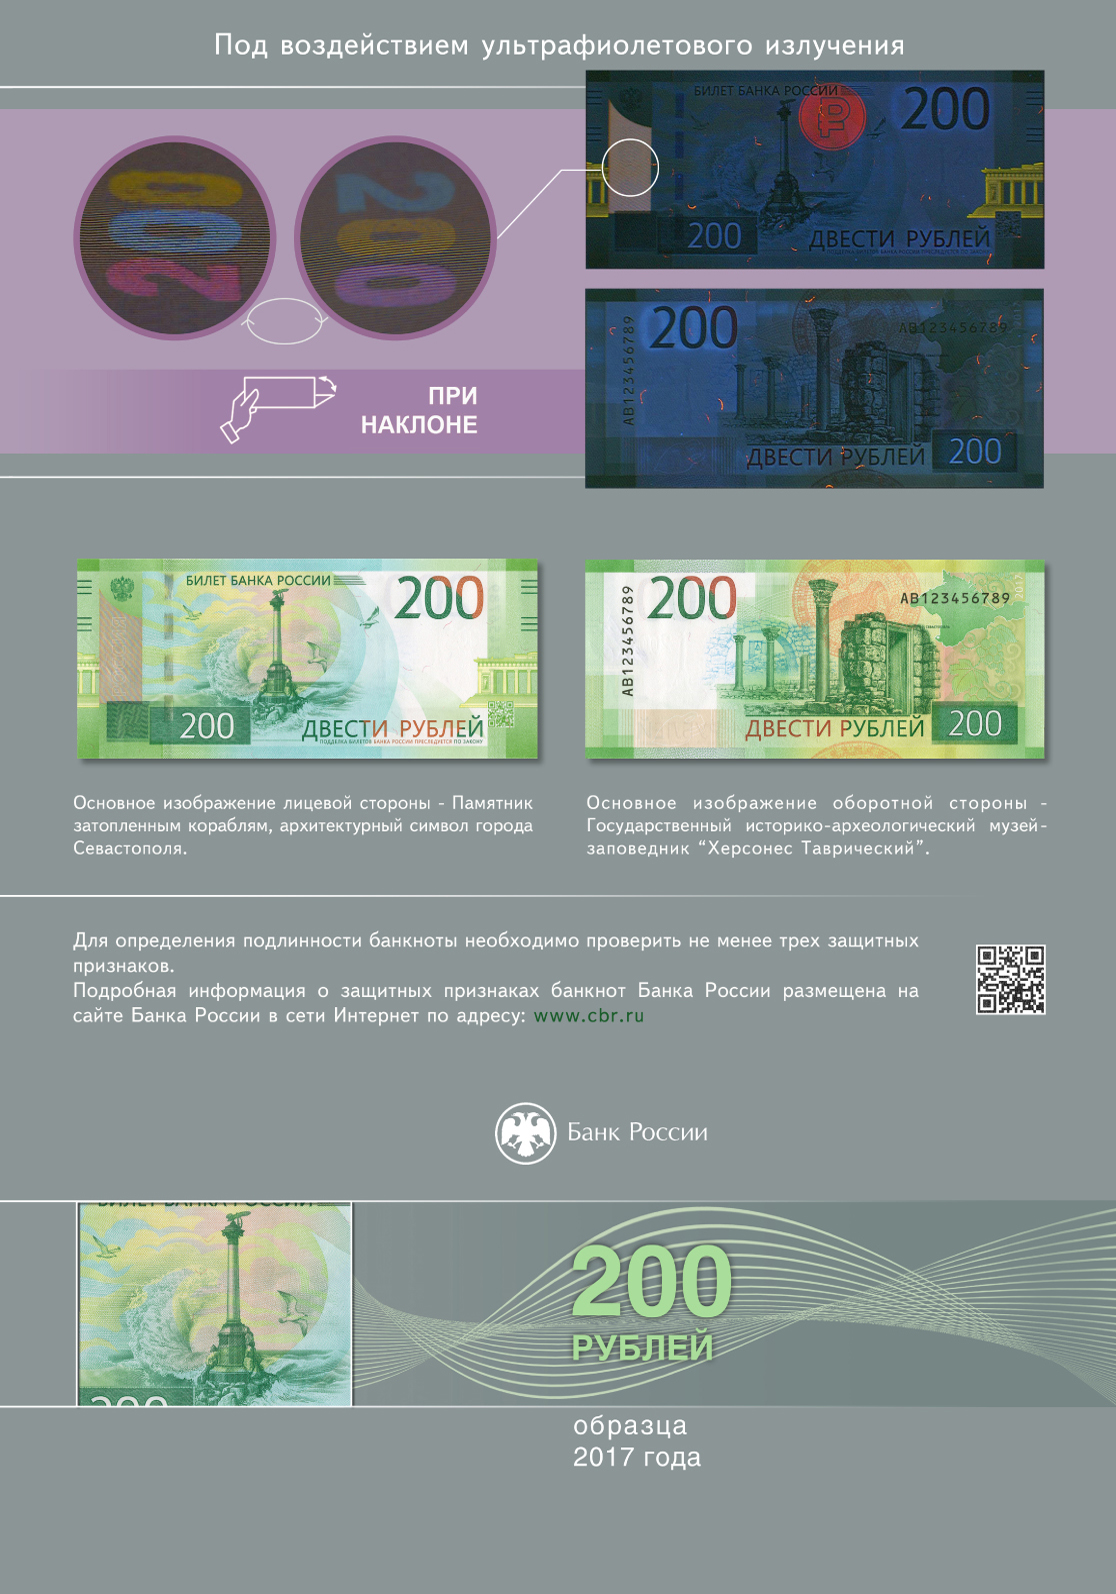 Банкнота банка России образца 2017 года номиналом 200 рублей